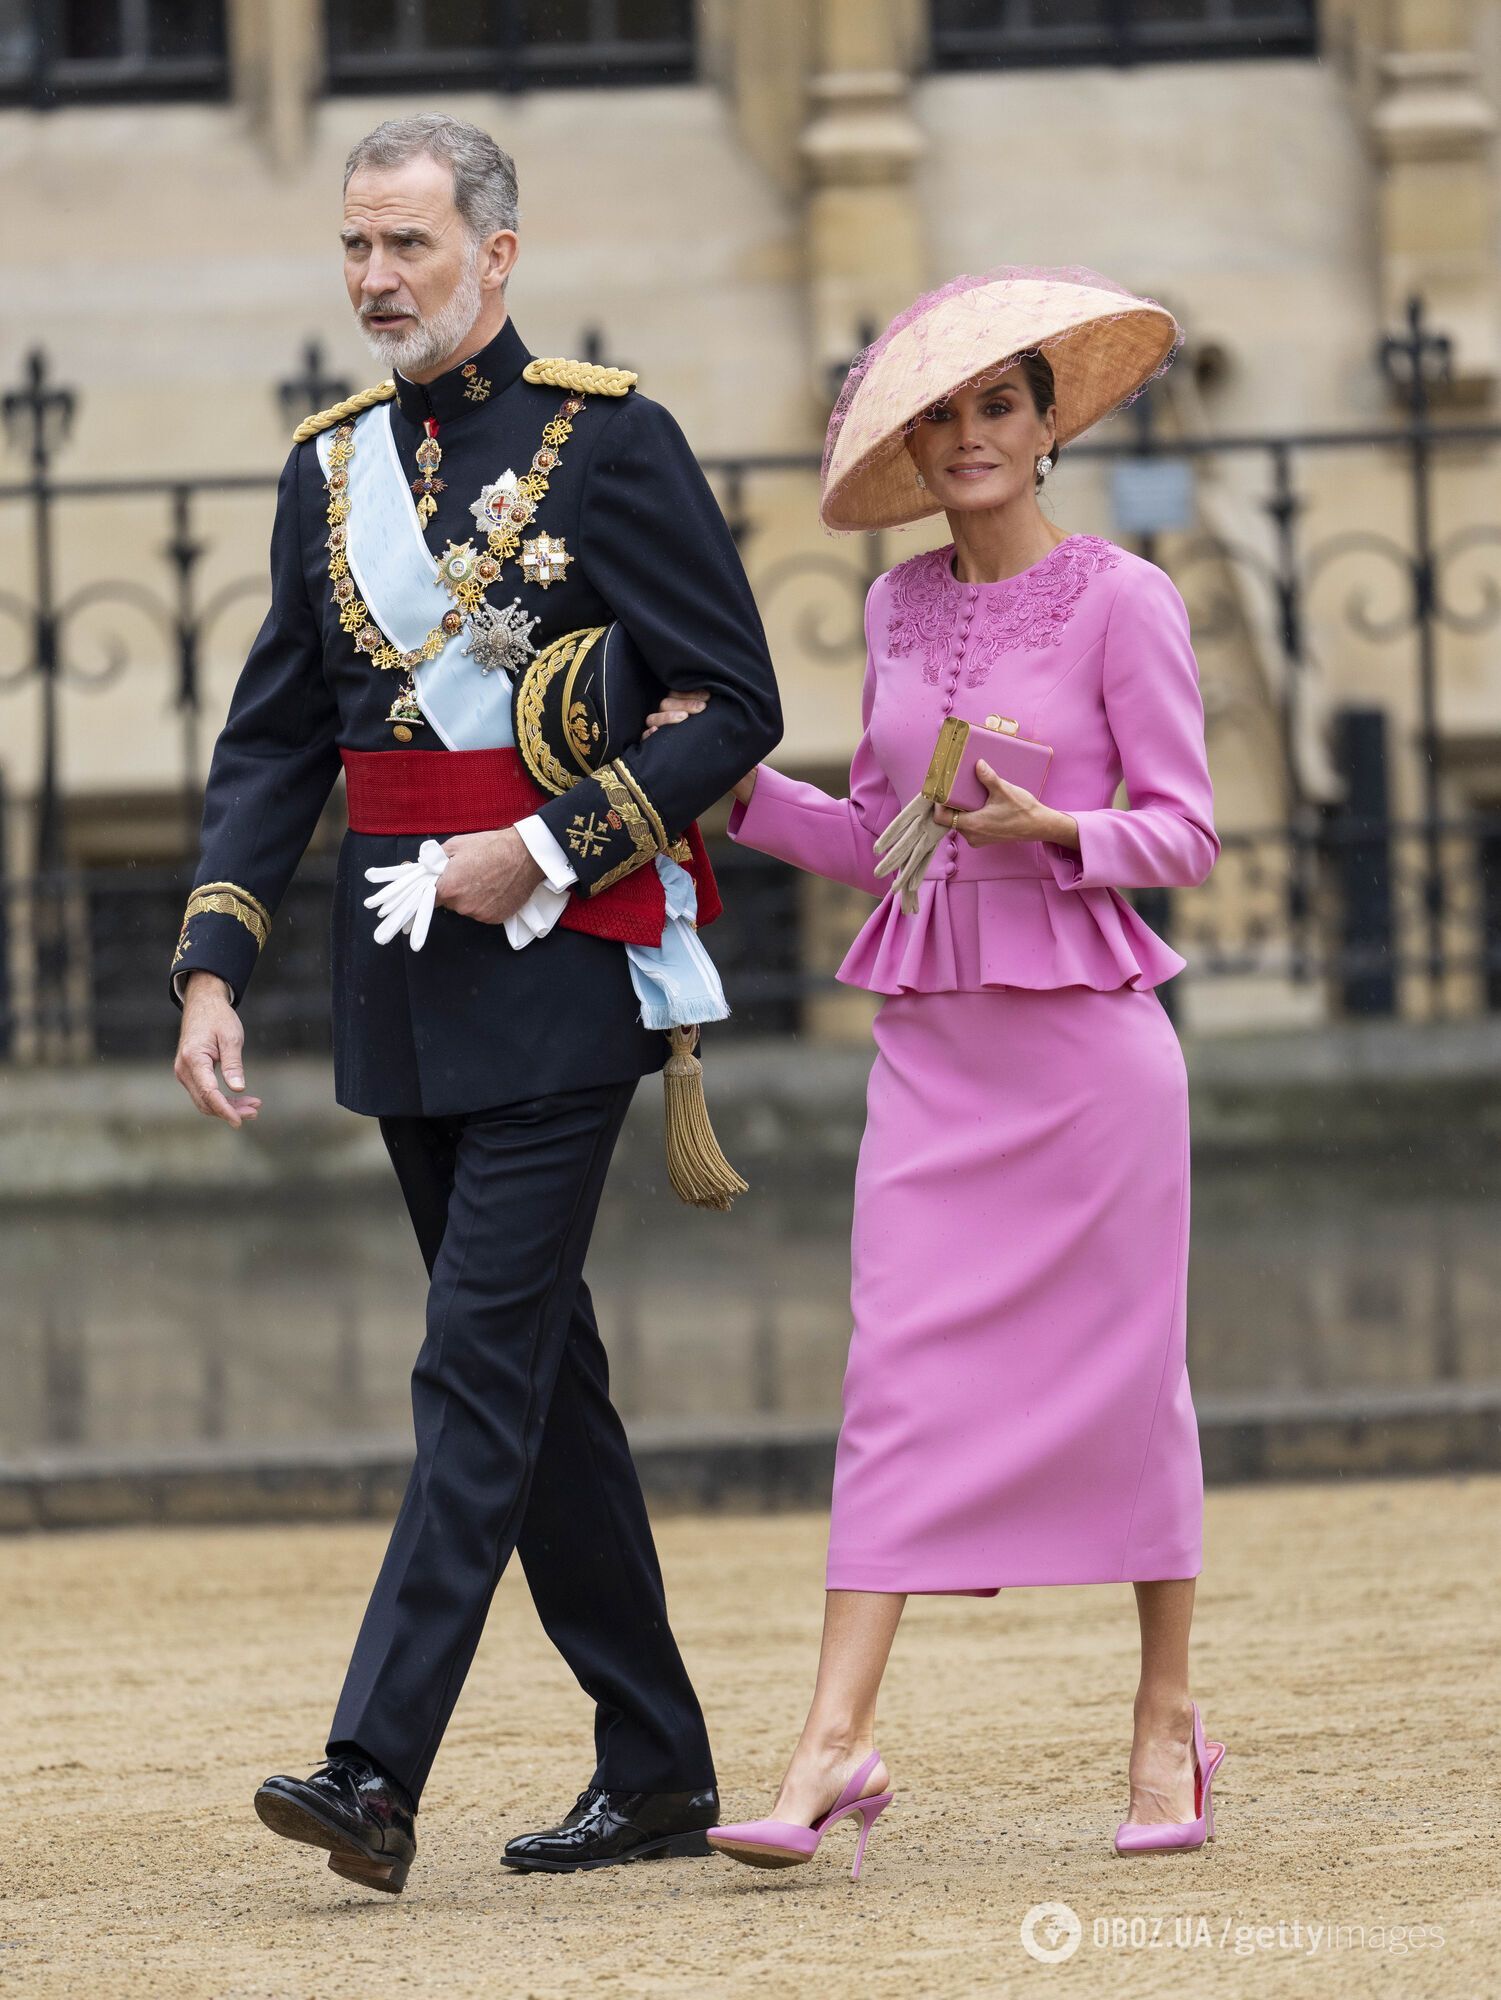 Унікальні сукні, коштовні підвіски та незвичні капелюшки: як одягнулися на коронацію Чарльза ІІІ монарші особи з інших країн